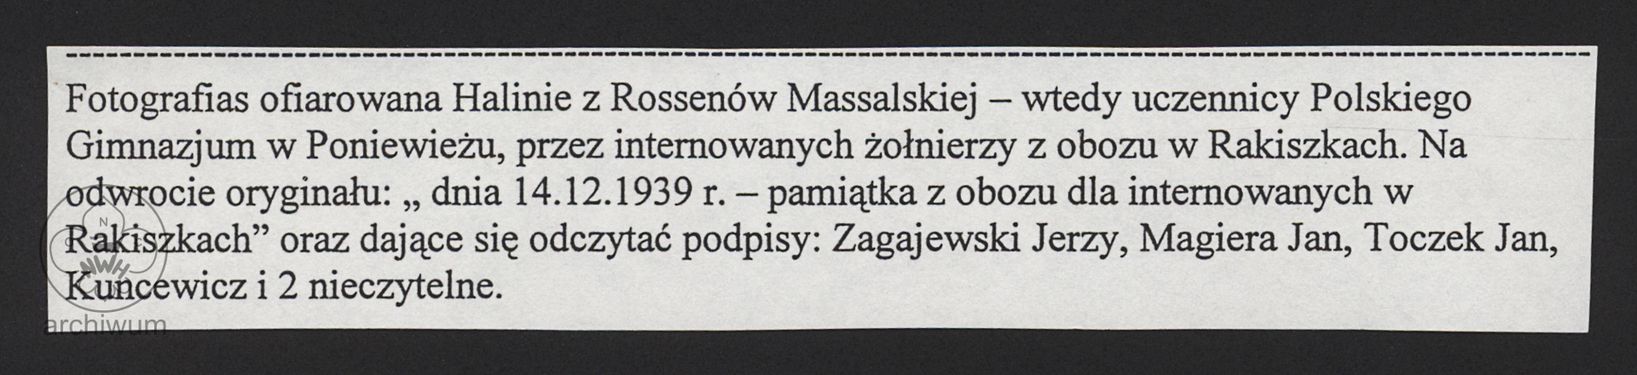 Materiały dot. harcerstwa polskiego na Litwie Kowieńskiej TOM III 066.jpg